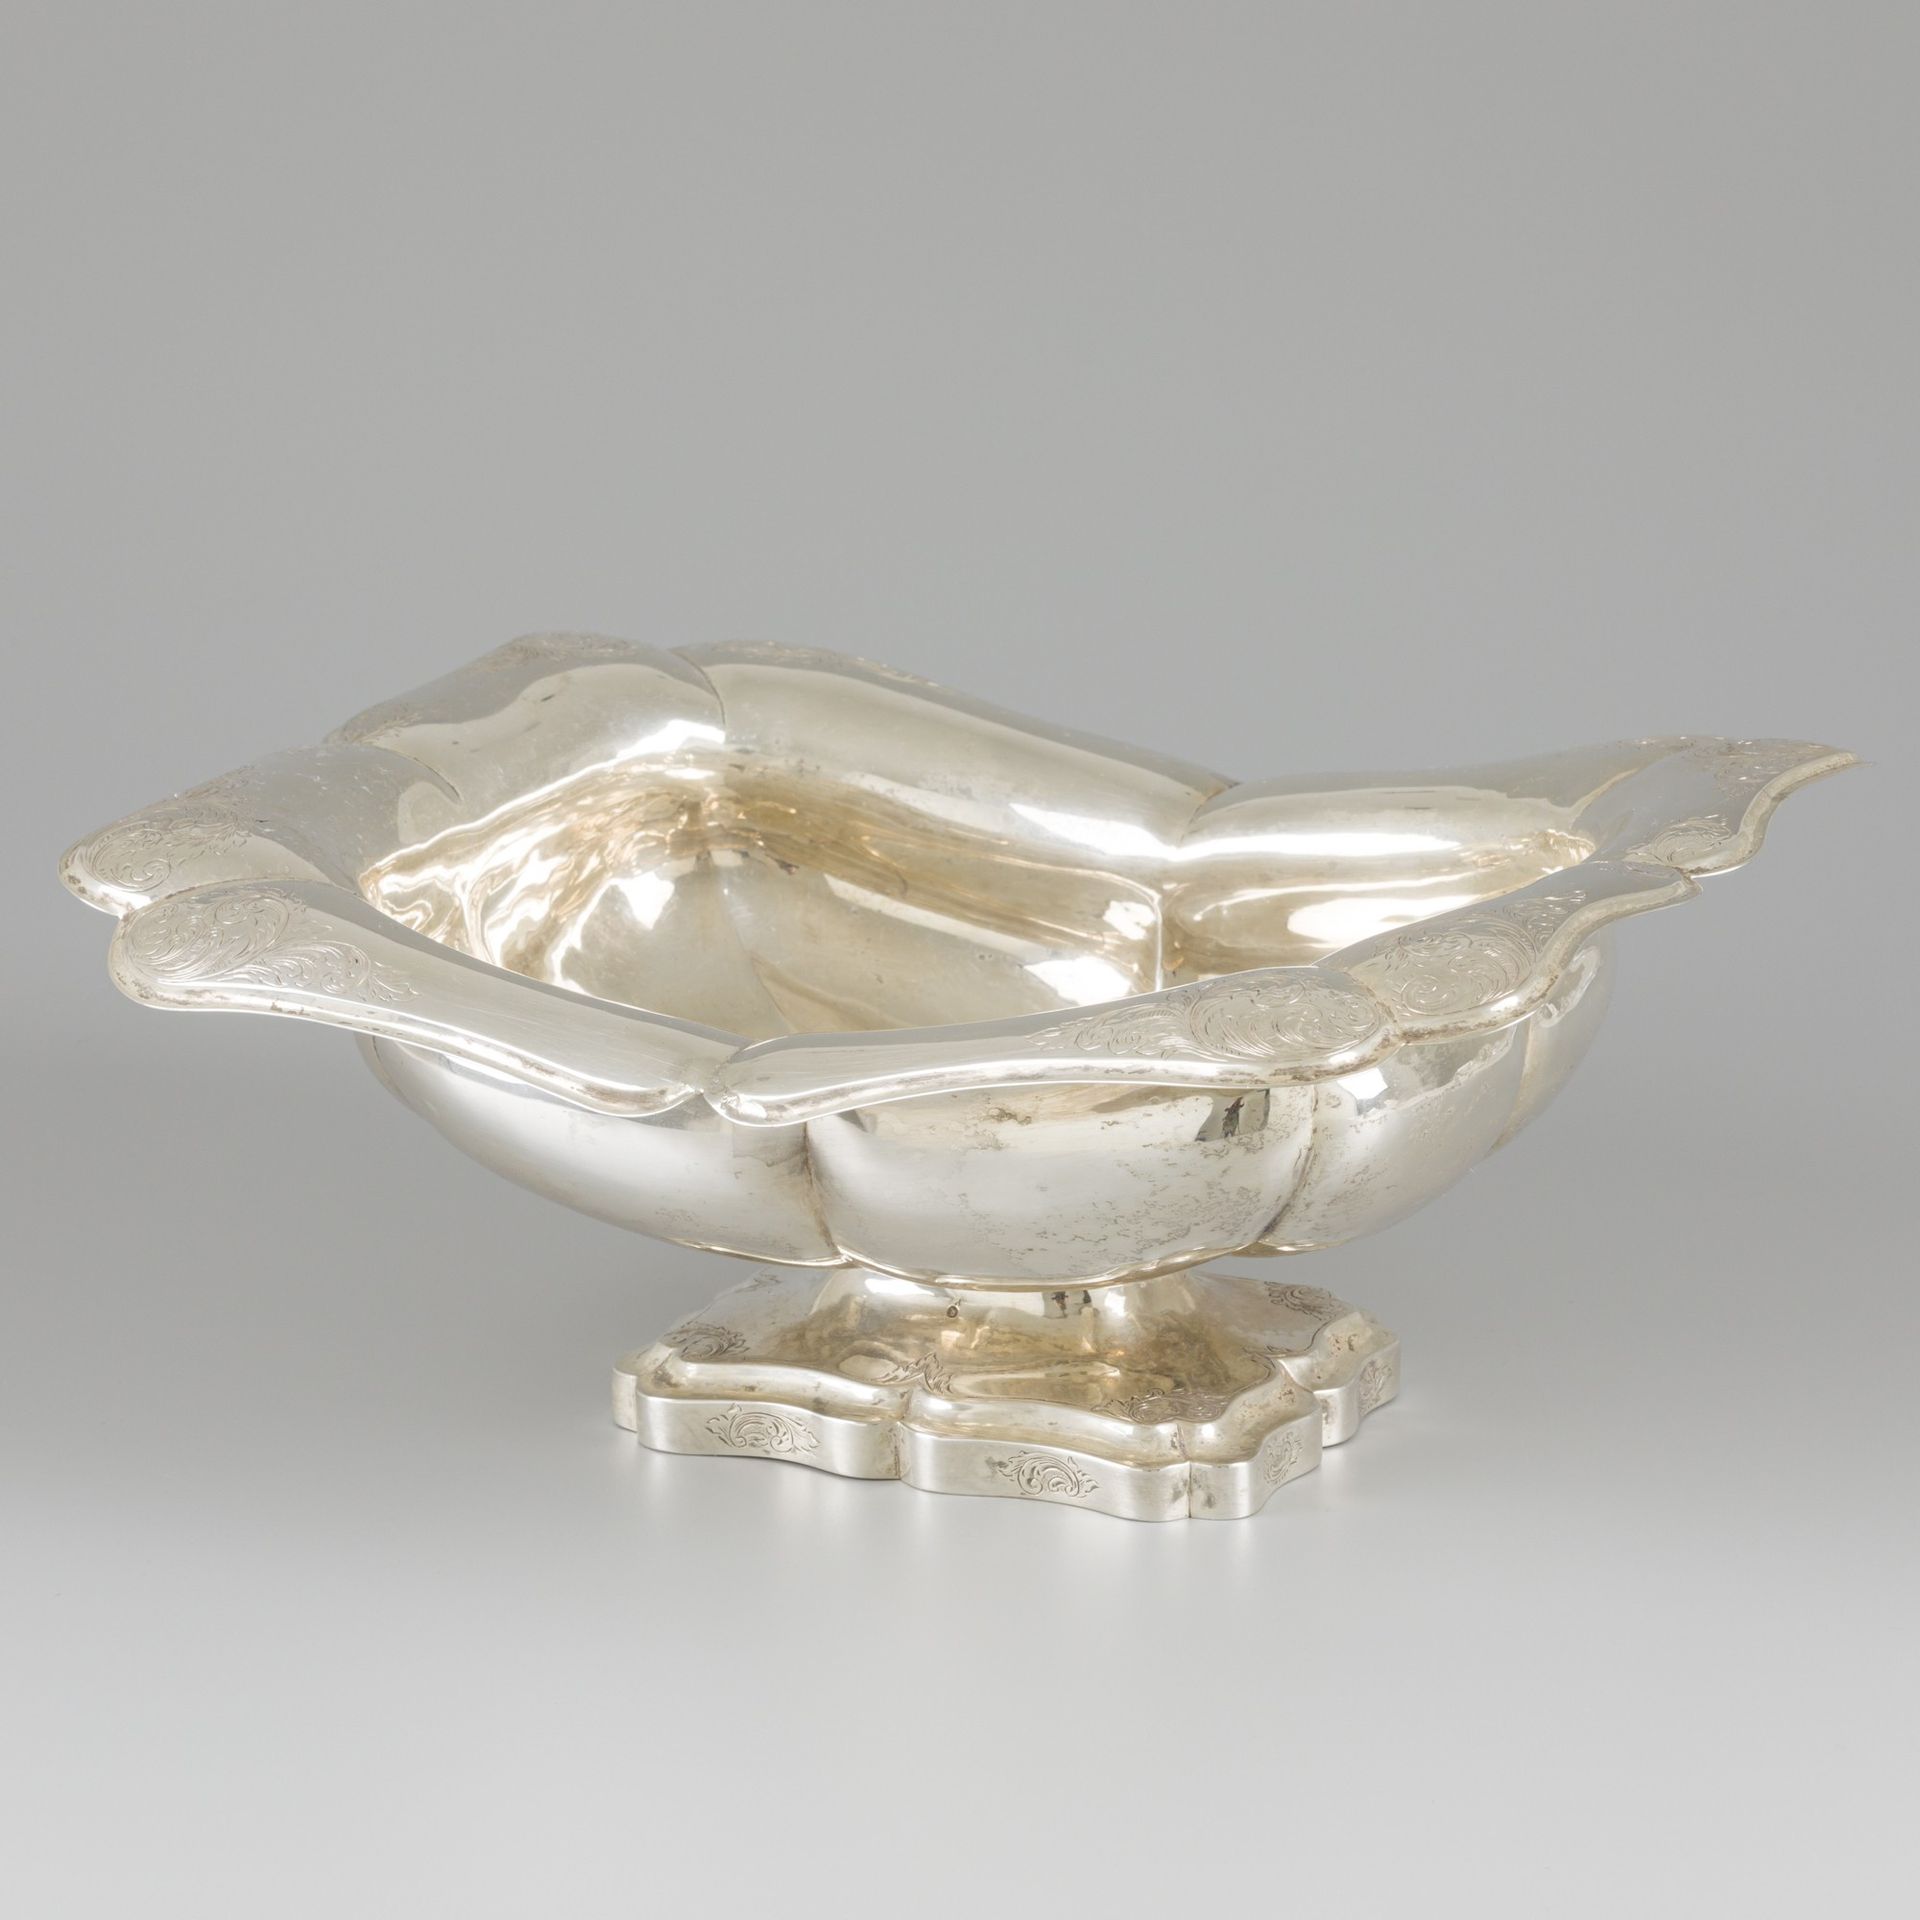 Fruit bowl (Amsterdam, Joost Even 1841-1880) silver. Su piede, con forme lobate &hellip;